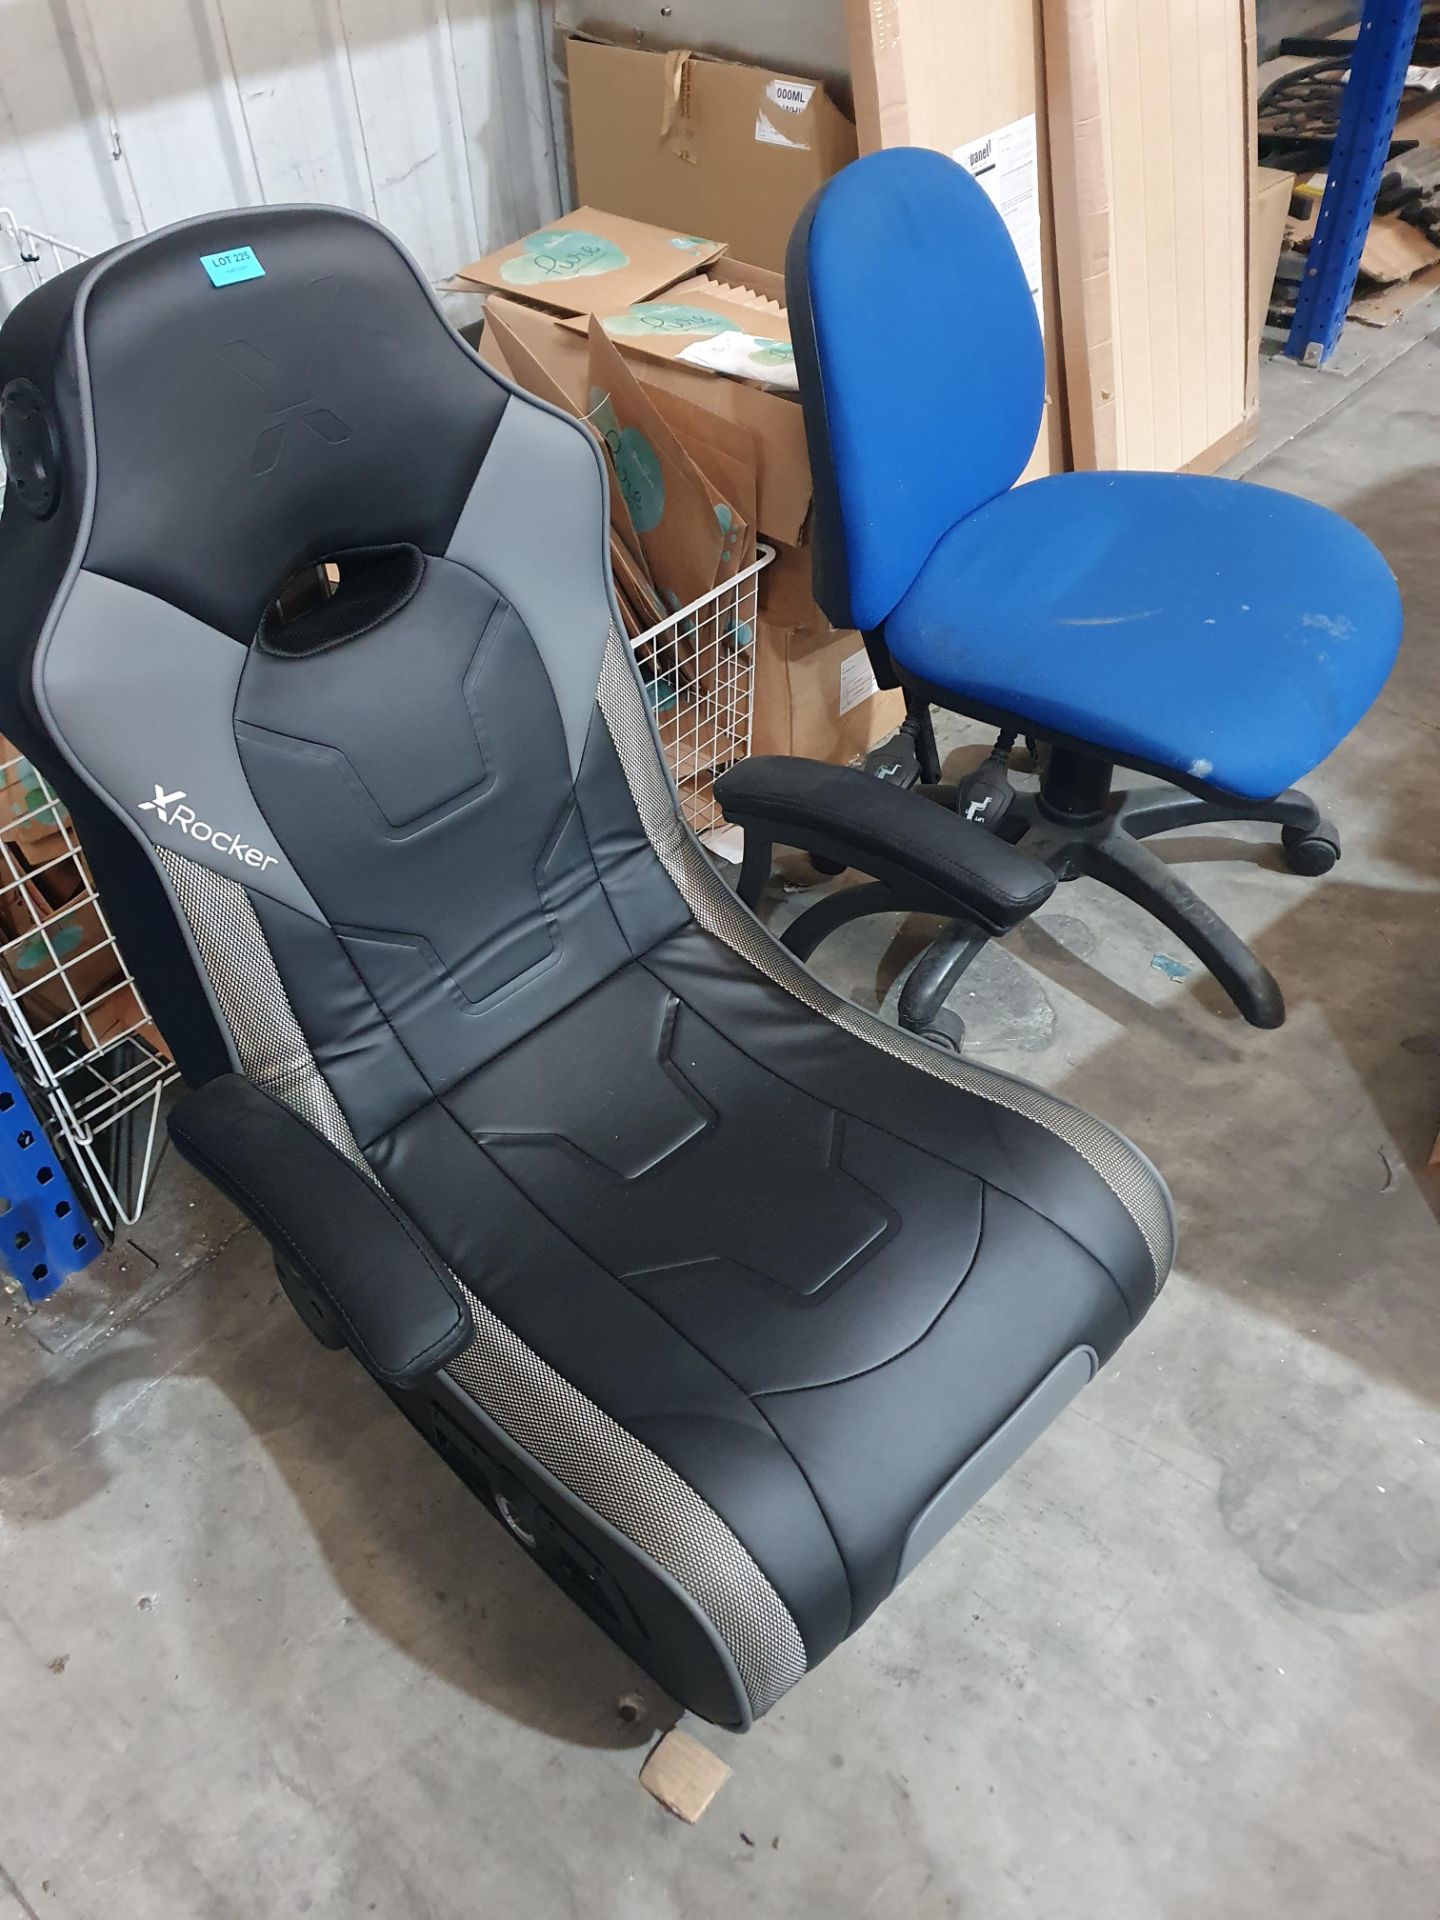 (R30 X-Rocker Gaming Chair & 1 x Office Chair.